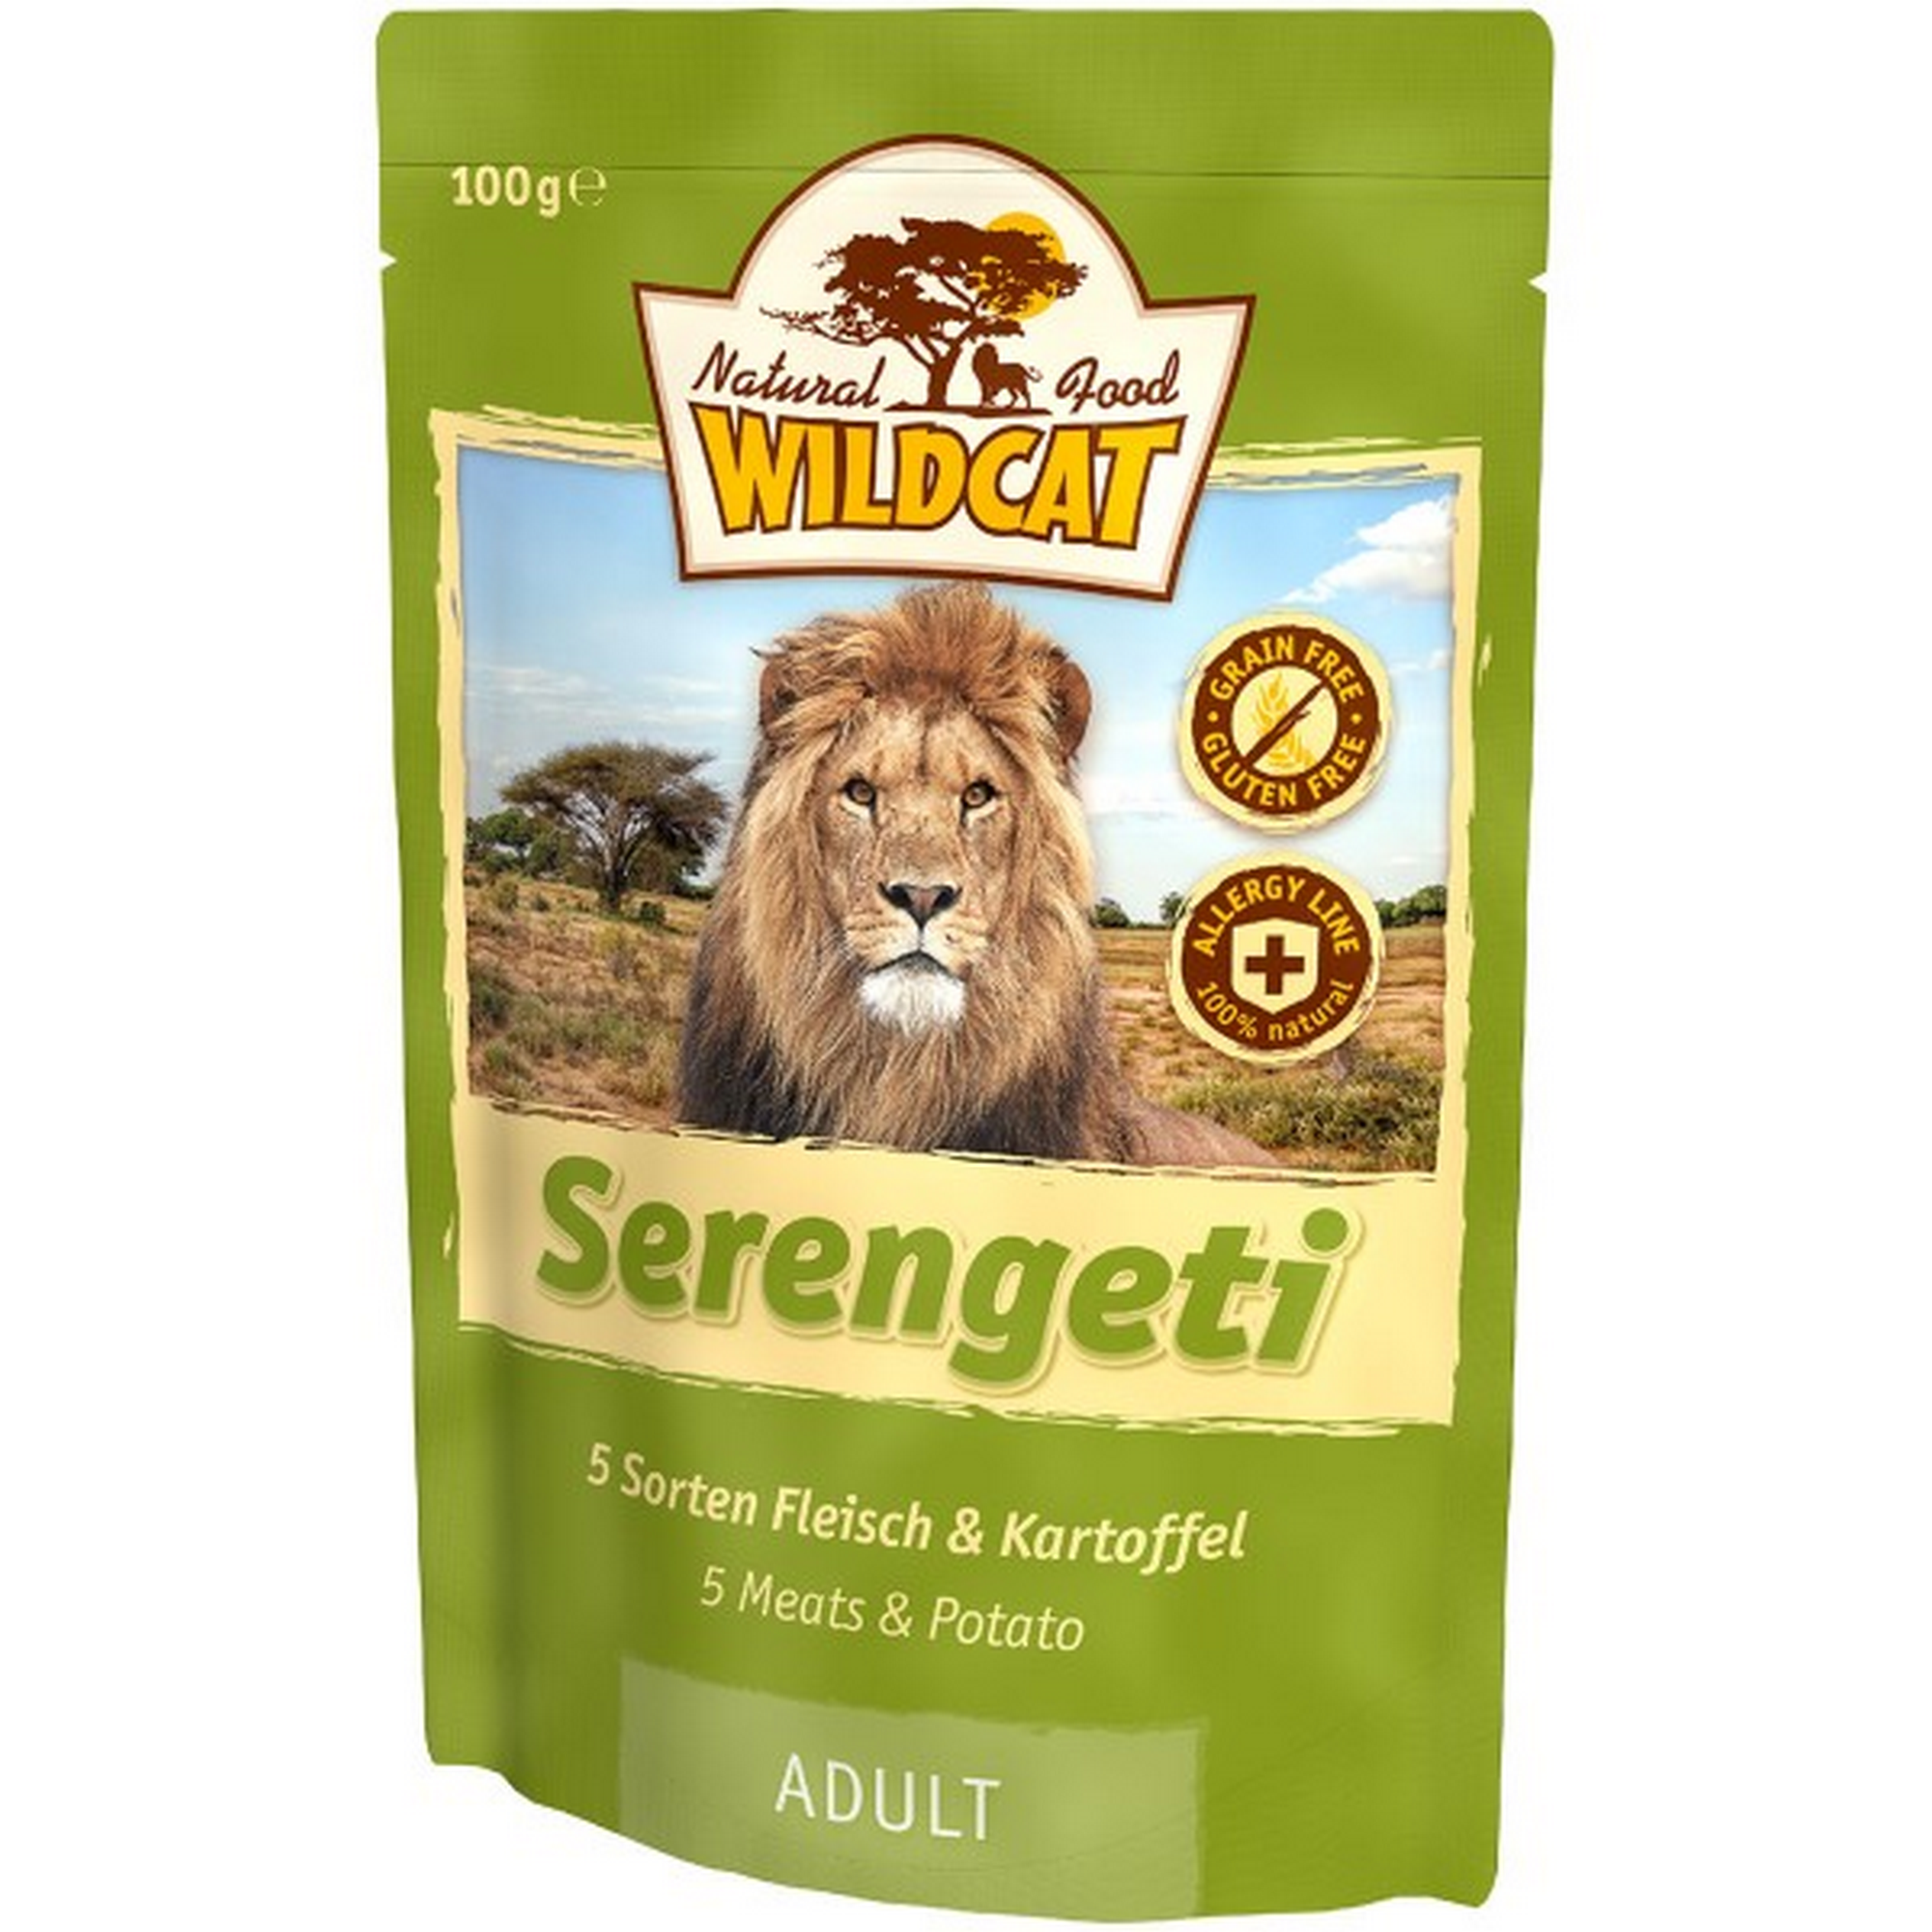 Katzennassfutter 'Serengeti' Adult Fleisch und Kartoffel 100 g + product picture